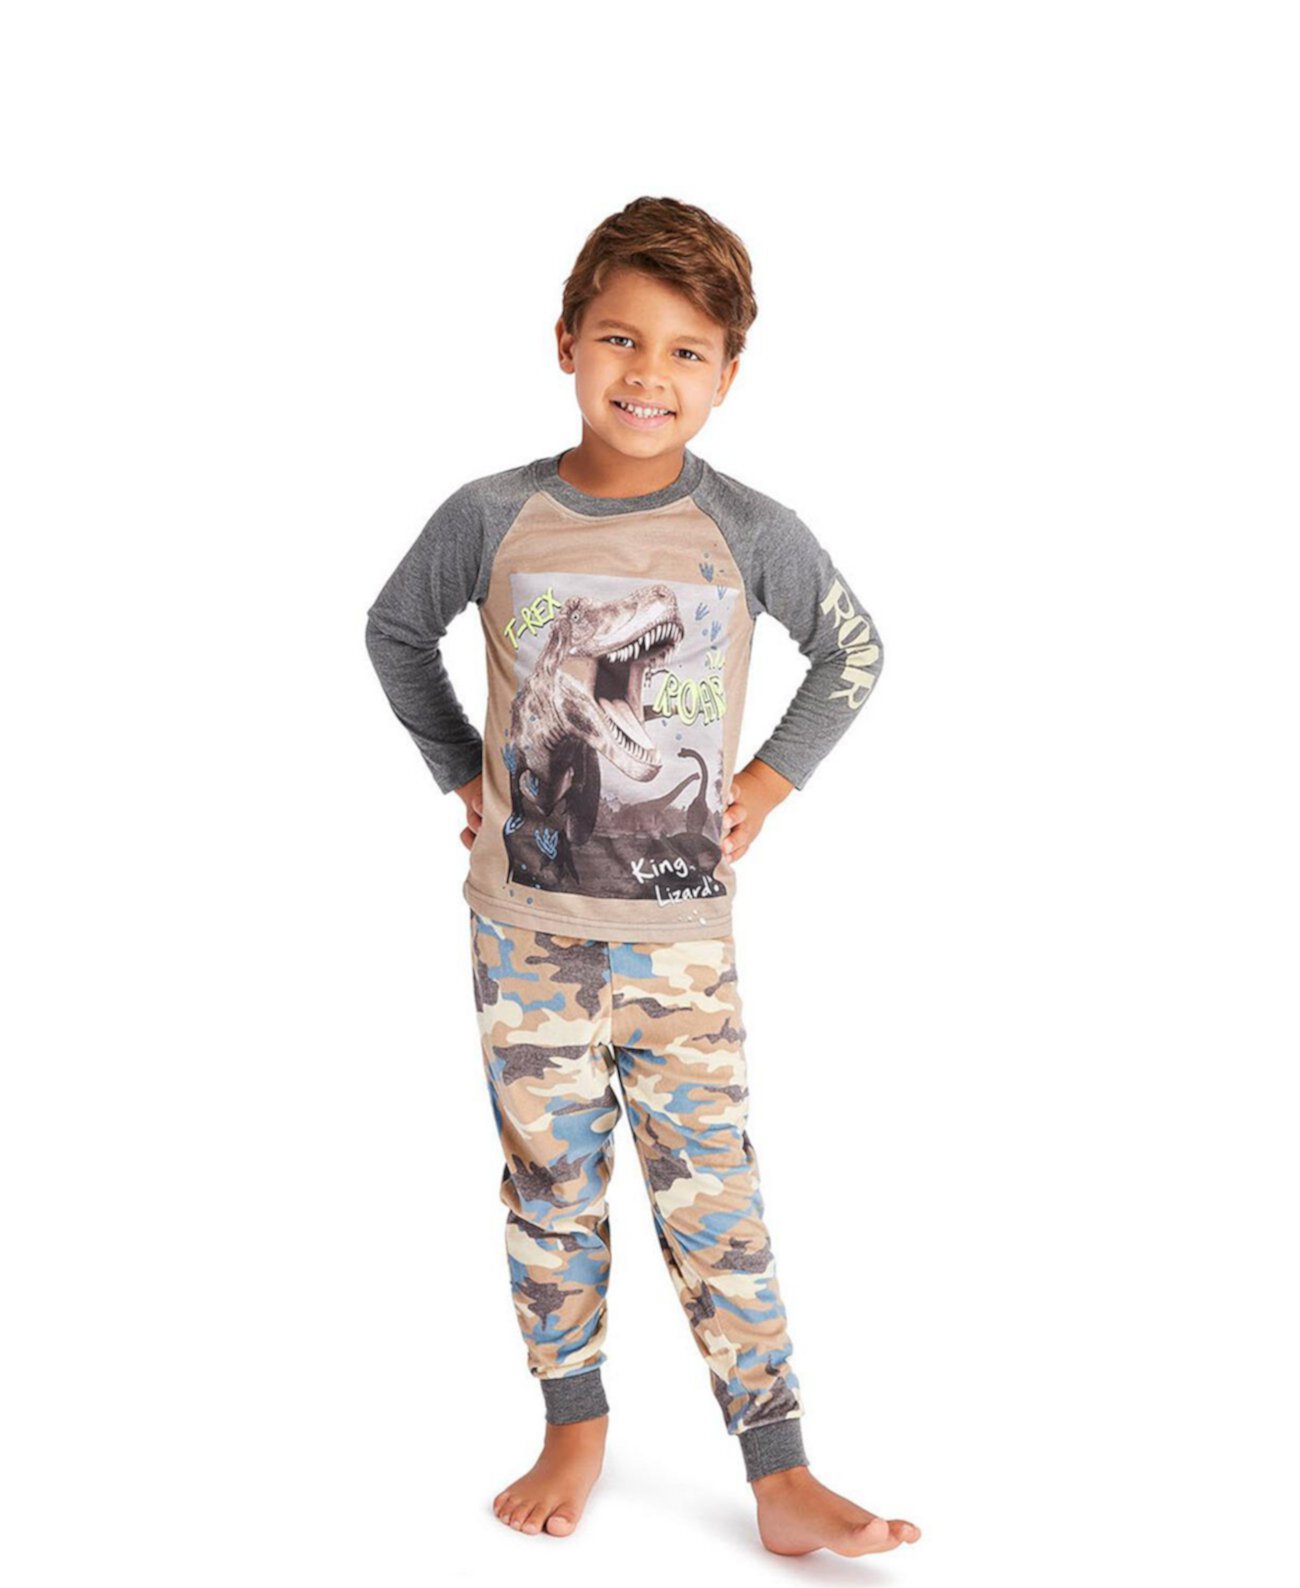 Пижамный комплект из 3 предметов для малышей | Детский пижамный комплект для мальчиков Детская одежда для сна, топ с длинными рукавами, длинные брюки с манжетами и шорты в тон Пижамный комплект Jellifish Kids